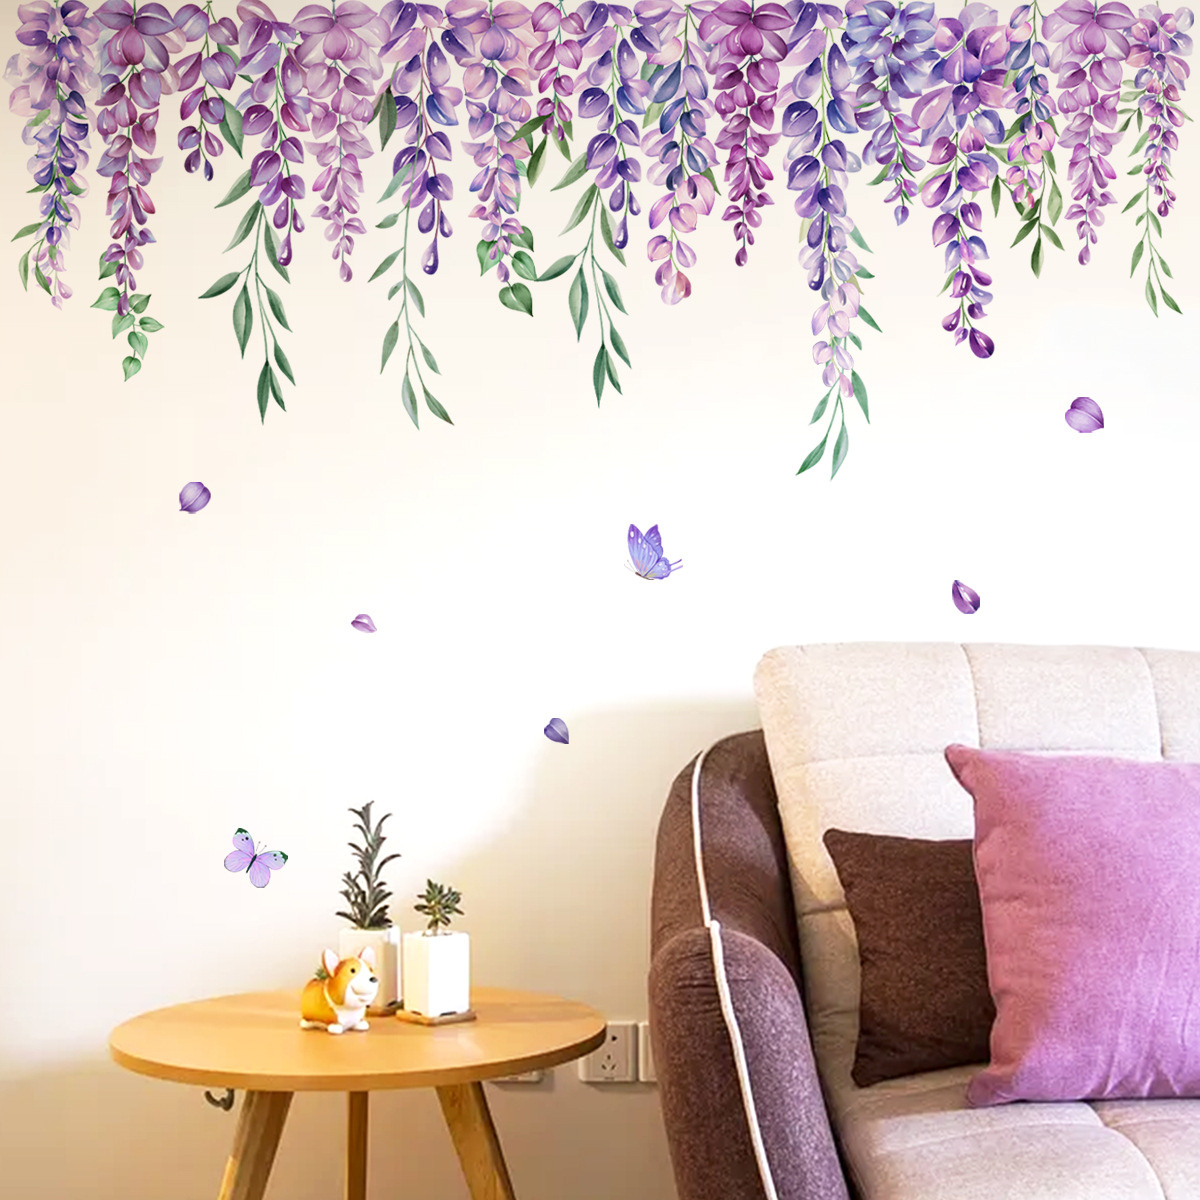 Purple Hanging Foliage Wall Stickers